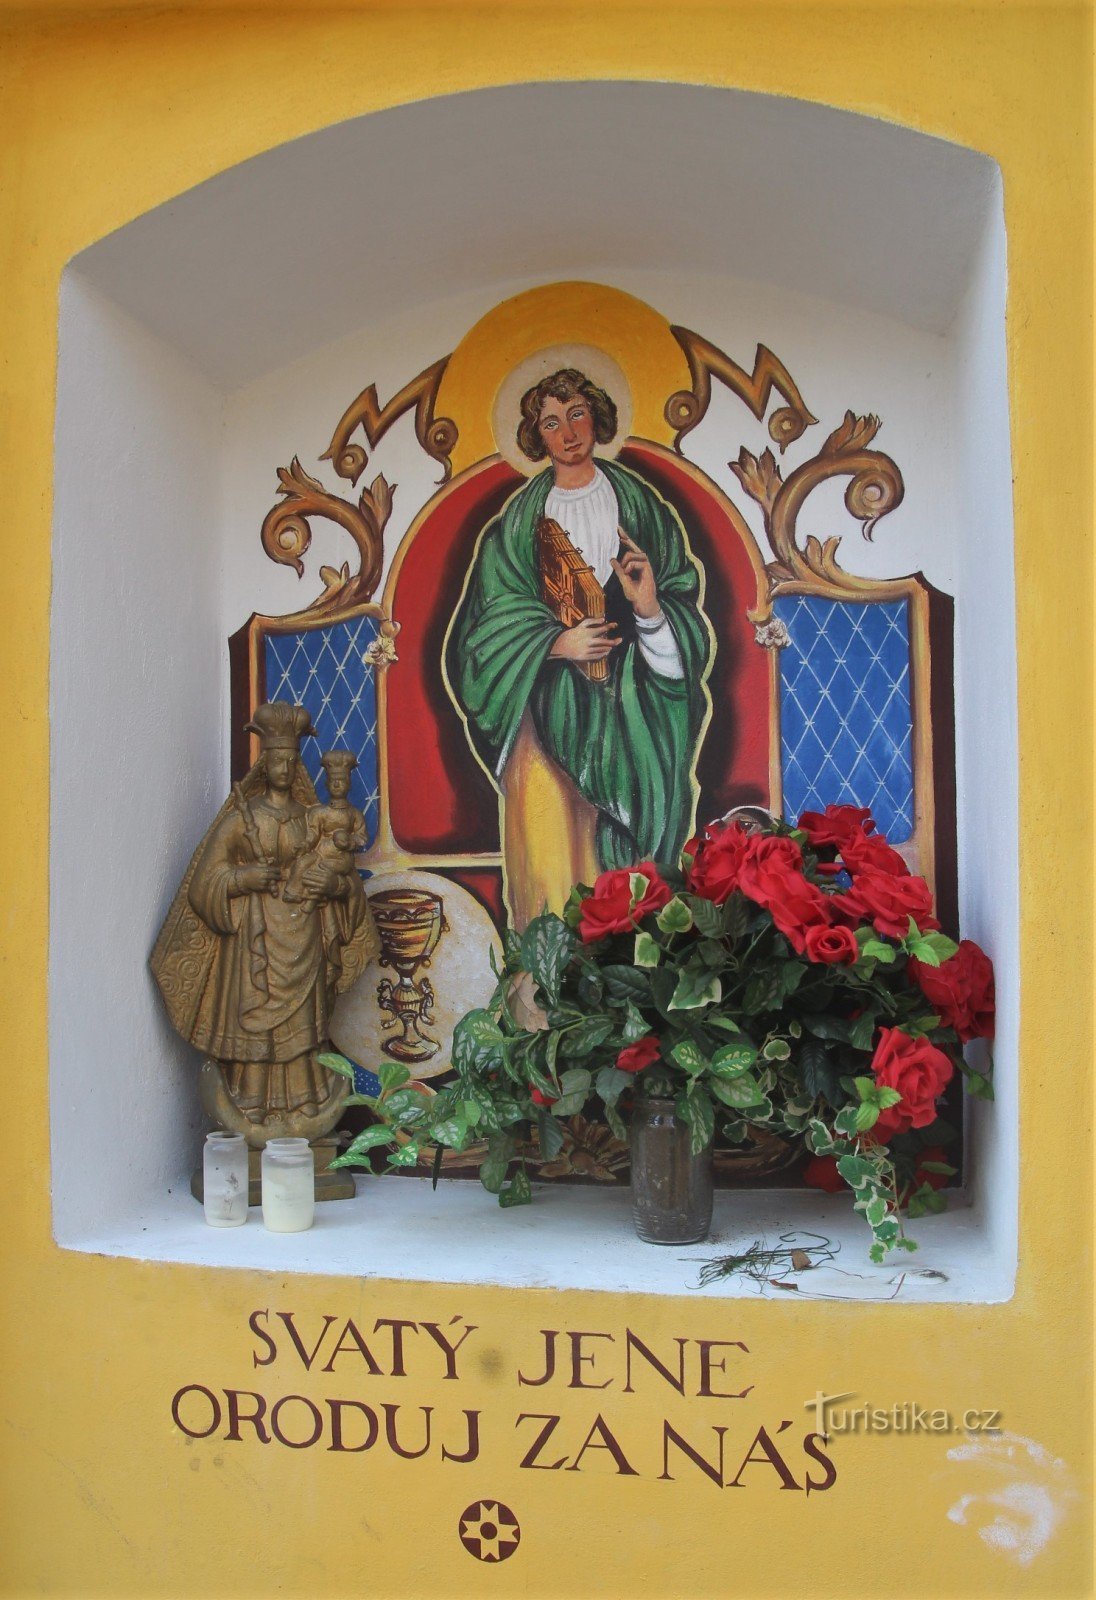 Motiv St. John i kapellets niche